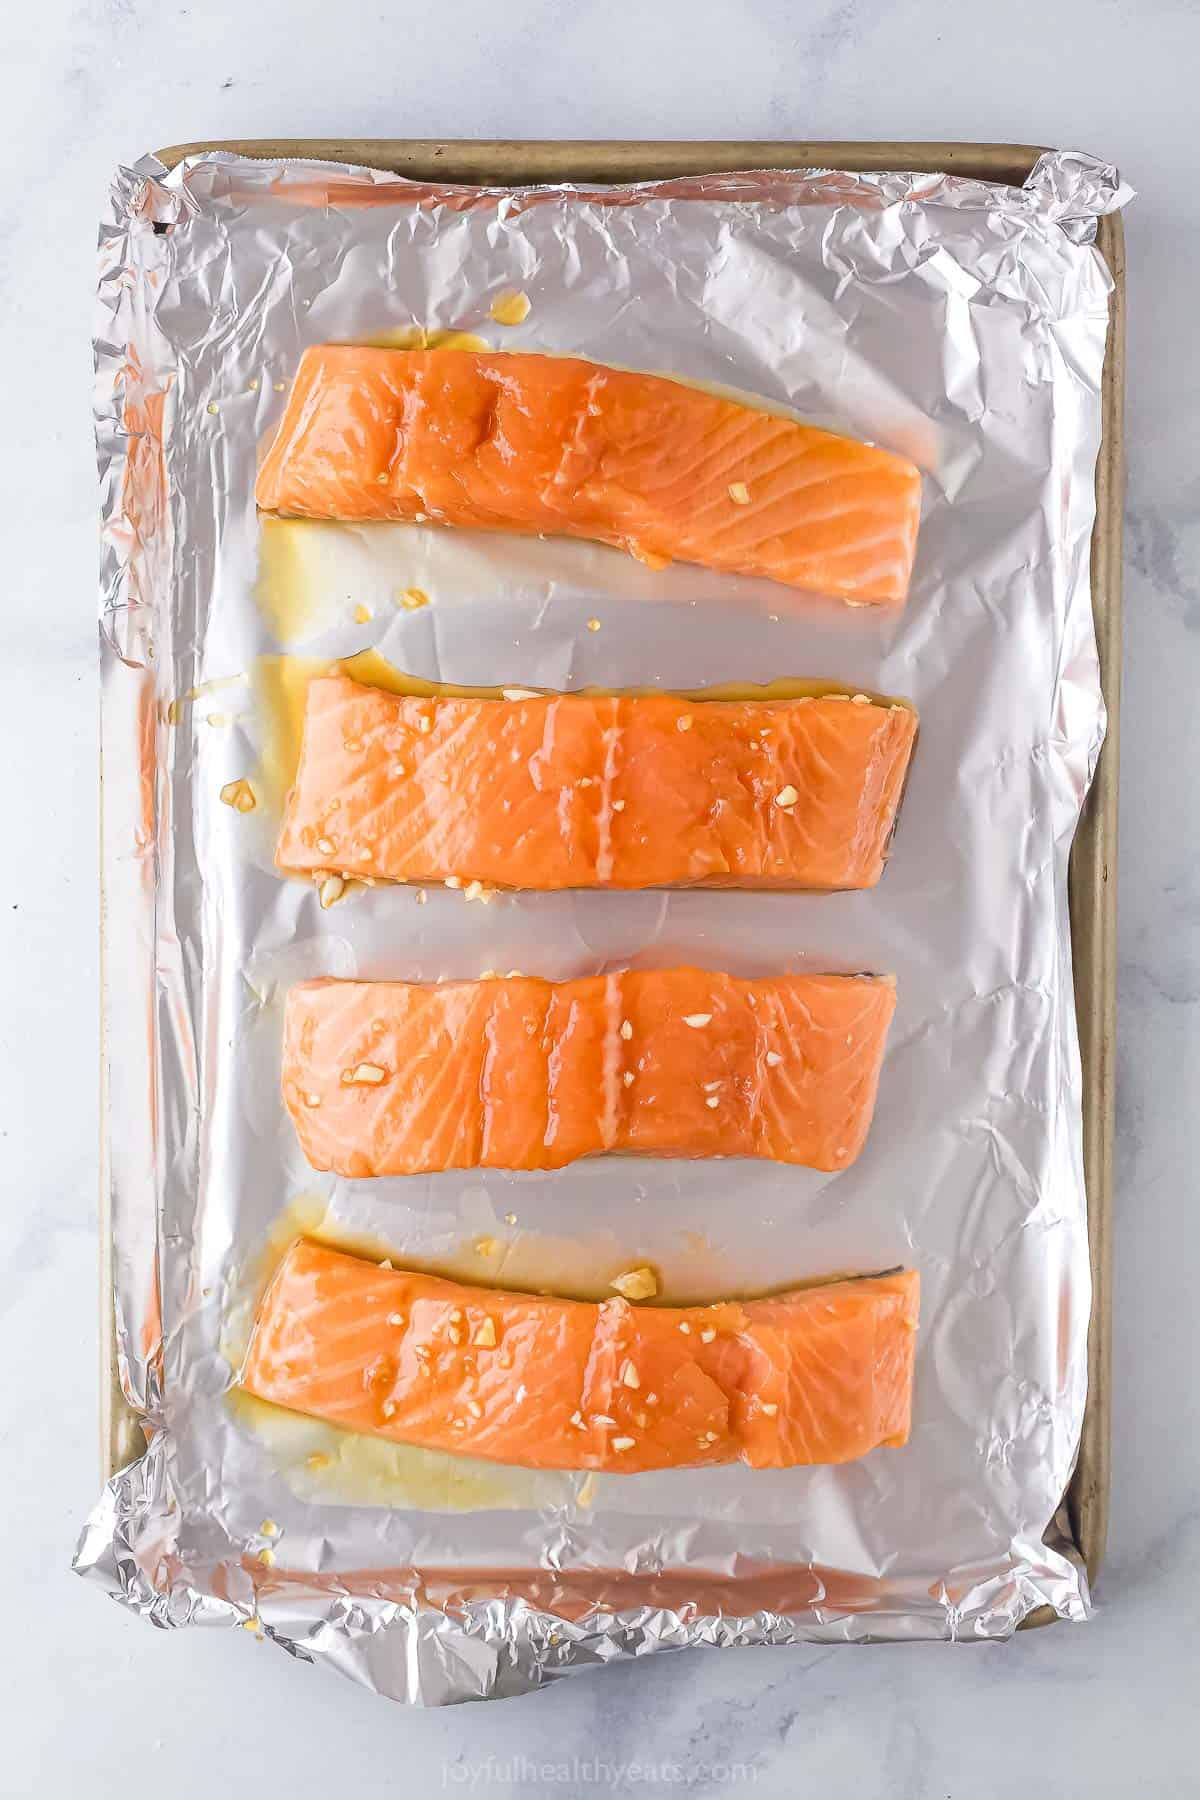 Place marinated salmon on baking sheet. 